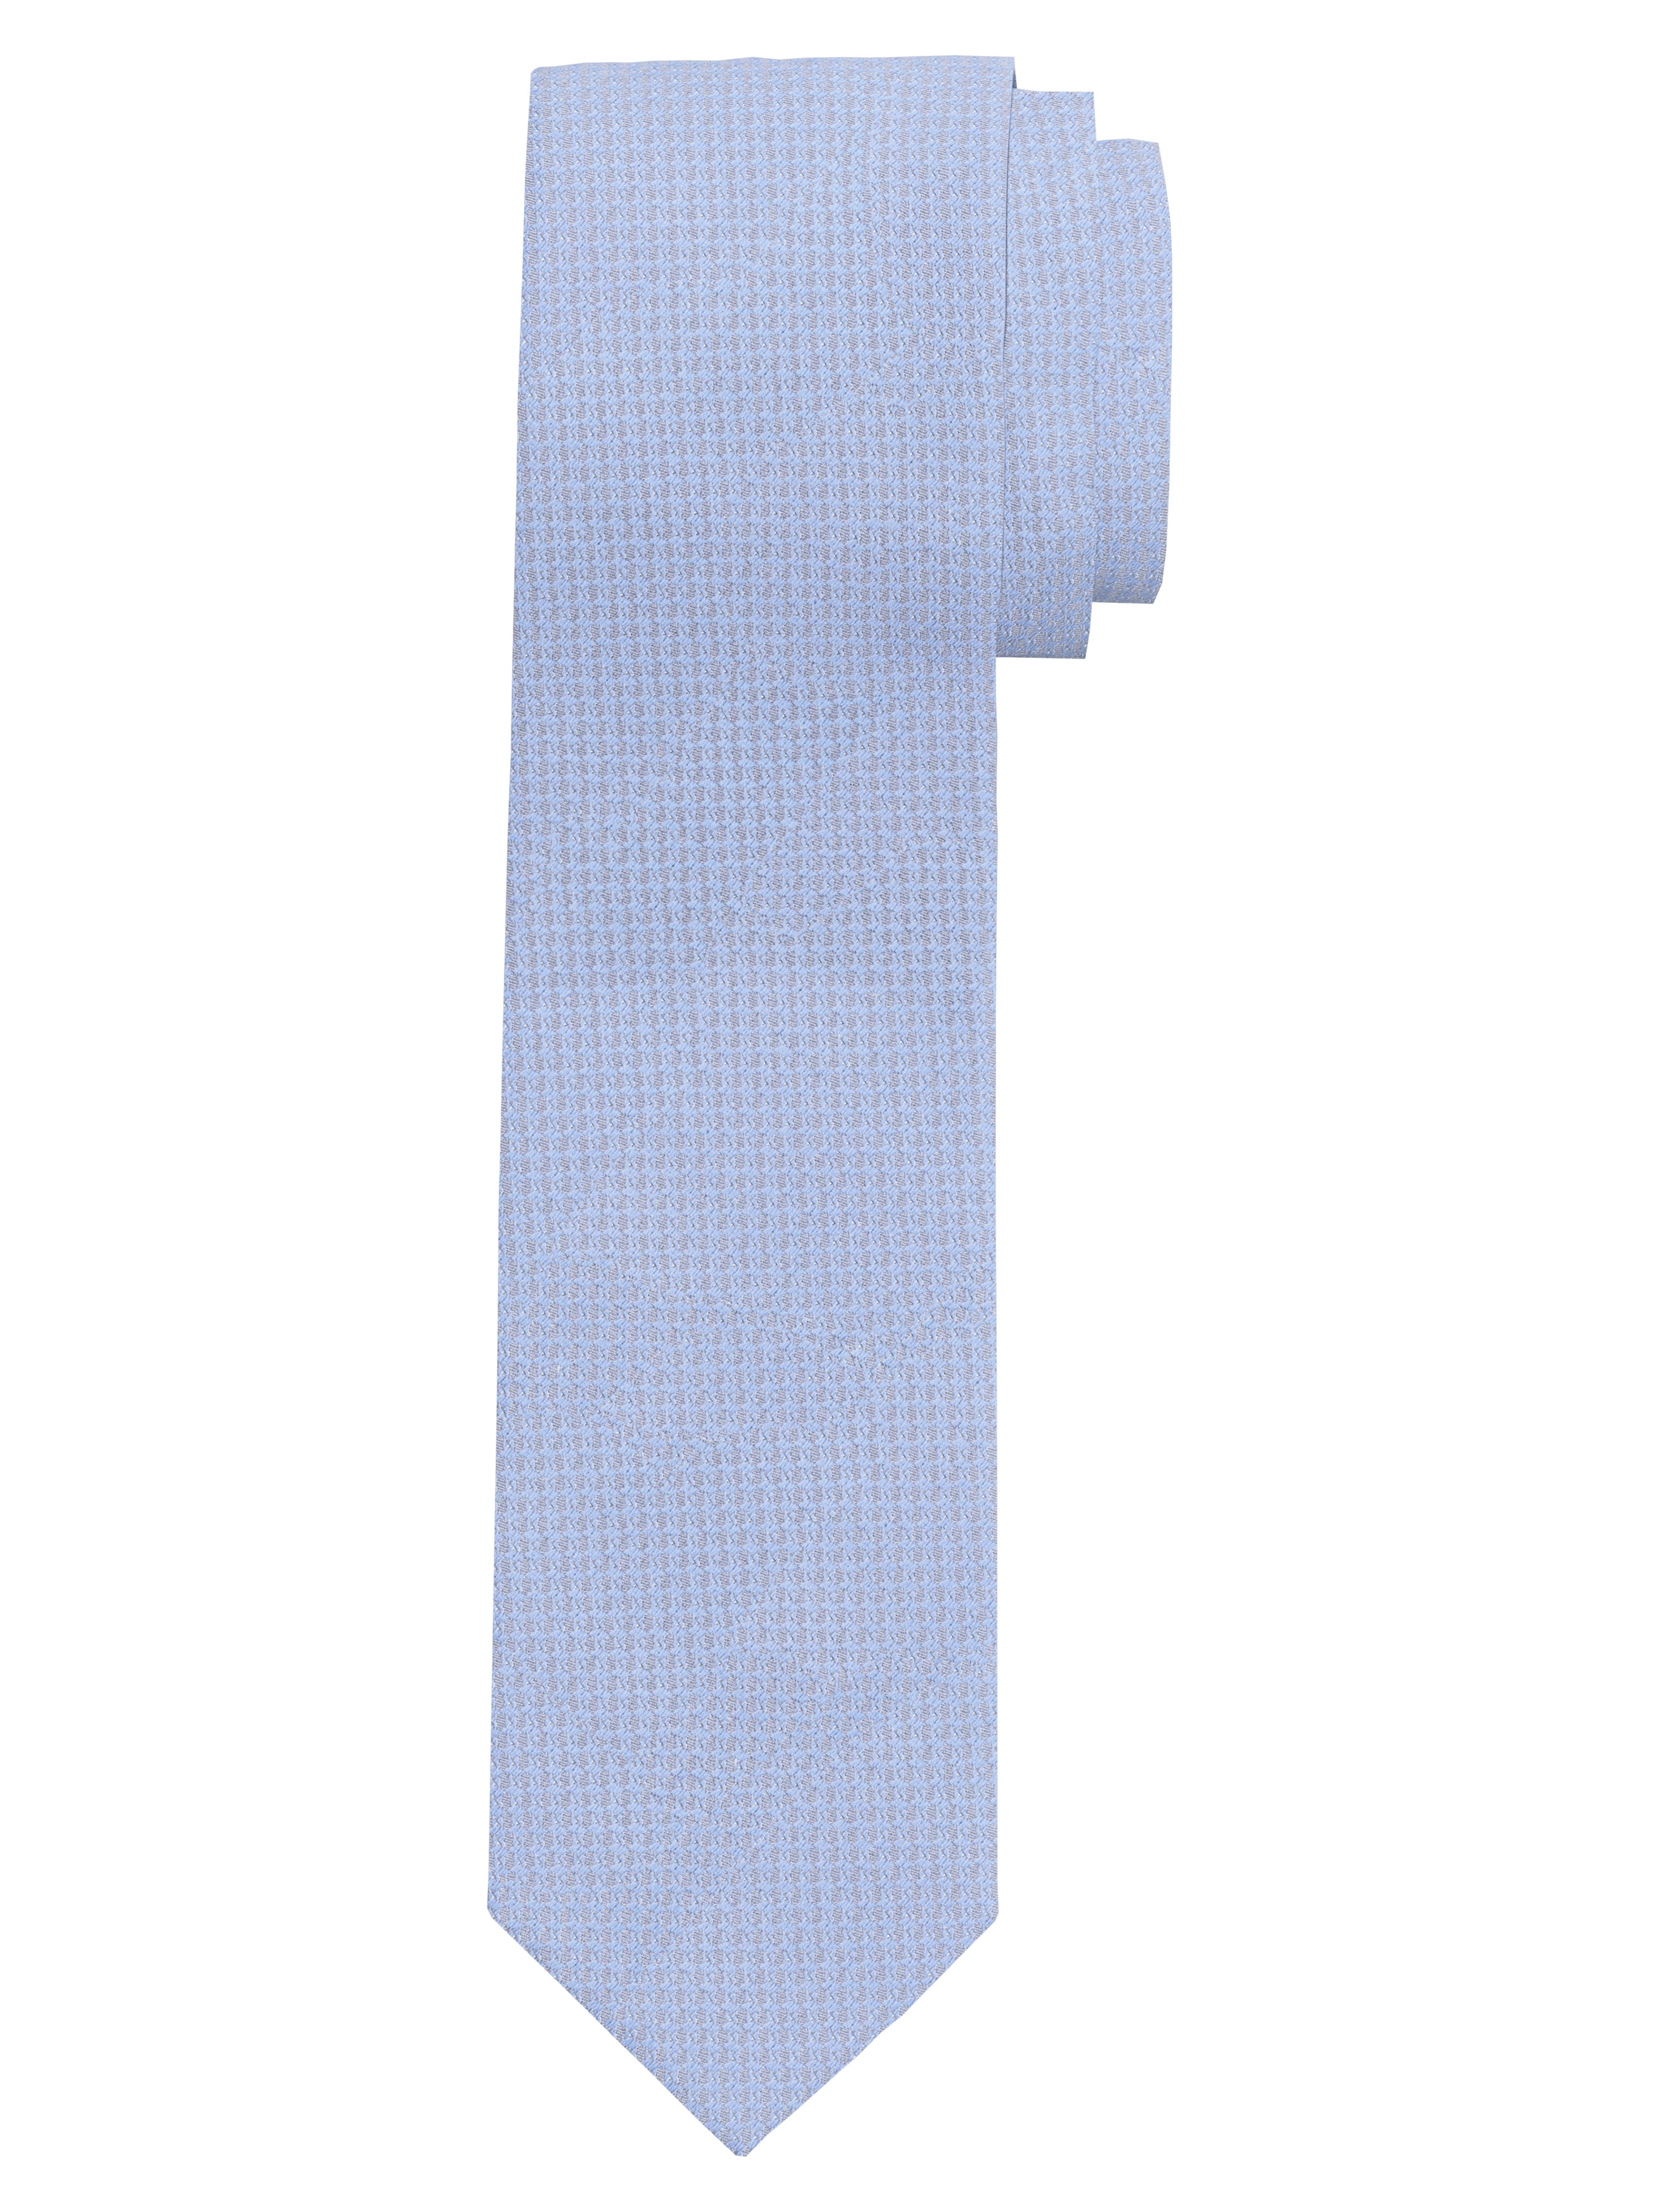 OLYMP Krawatte, slim 6,5 cm | Hellblau - 1782001001